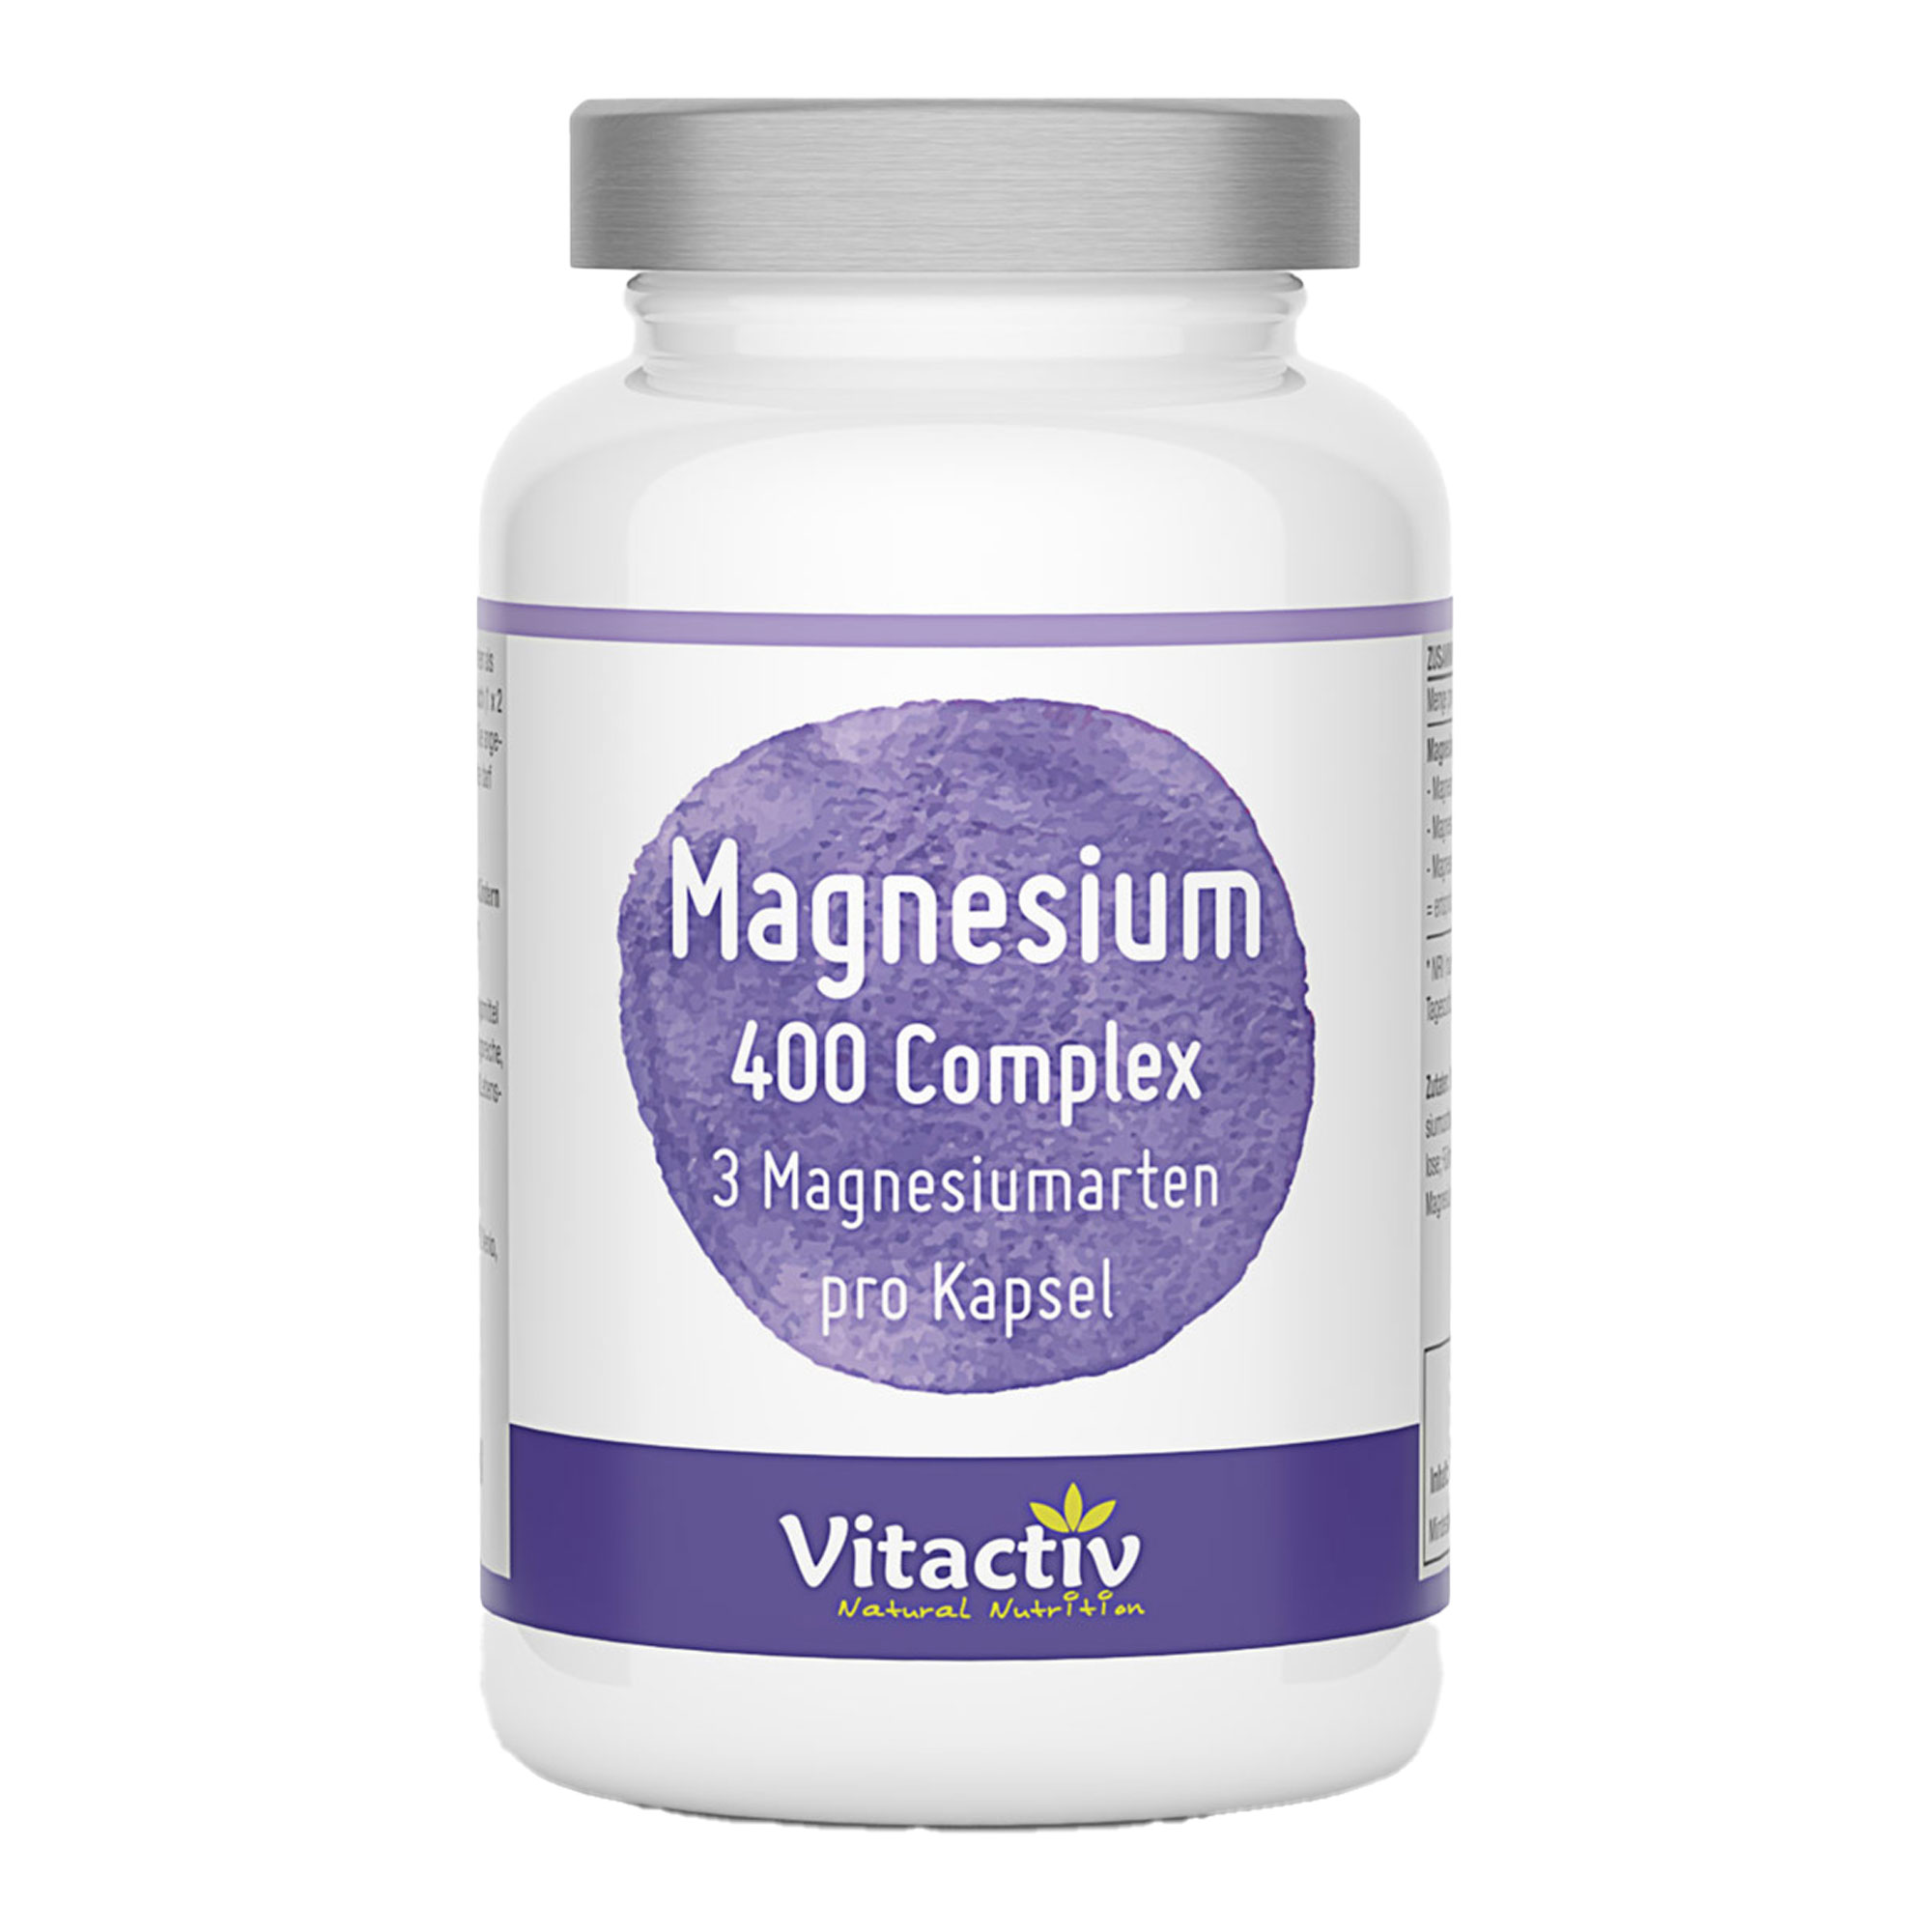 Nahrungsergänzungsmittel mit drei verschiedenen Magnesiumarten.